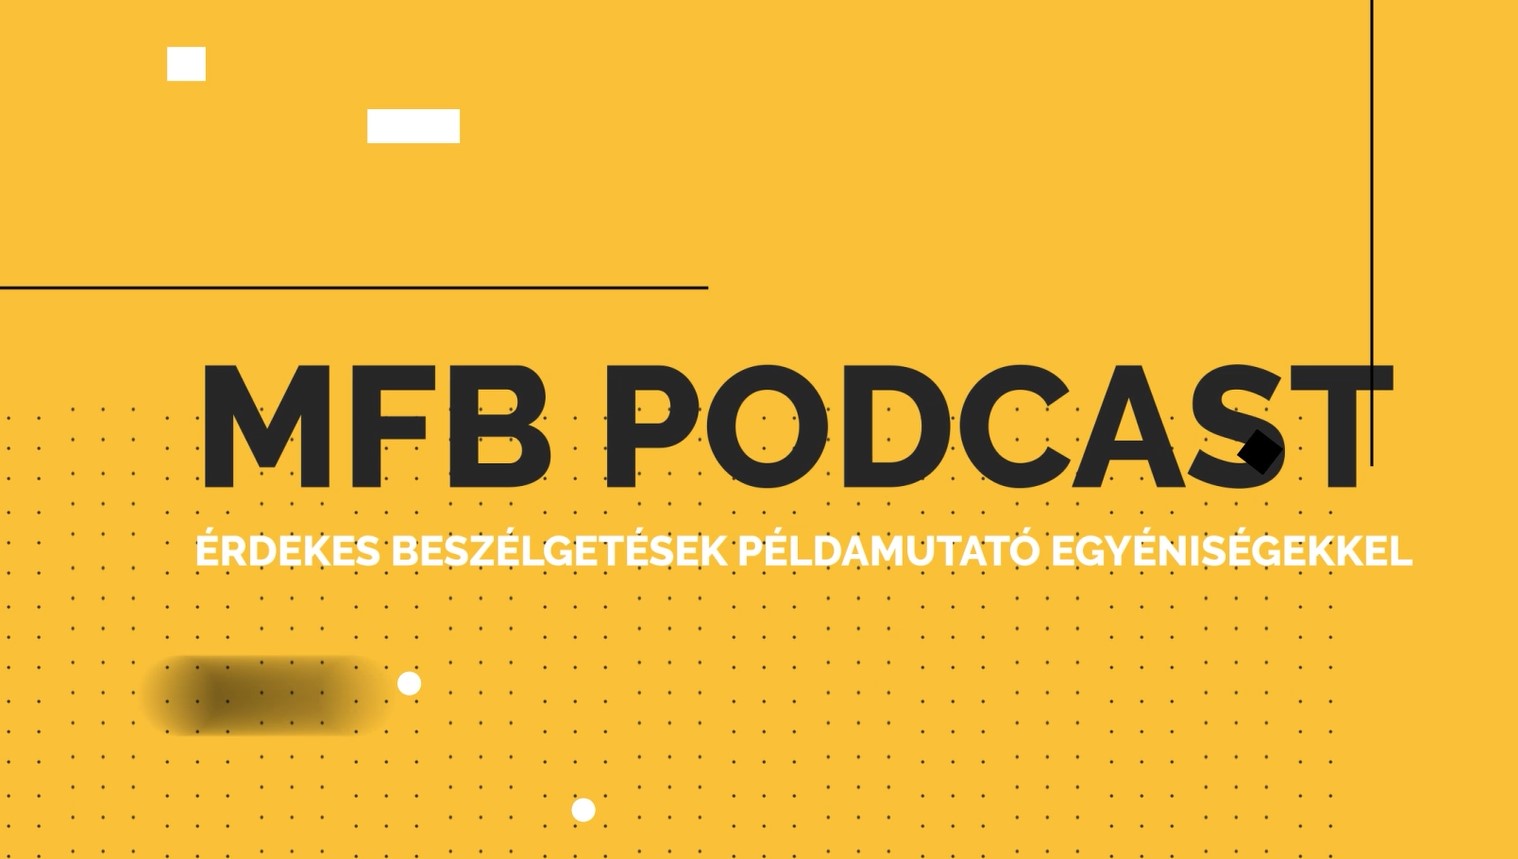 MFB Podcast - Beszélgetés a Mentő Márton alkalmazásról